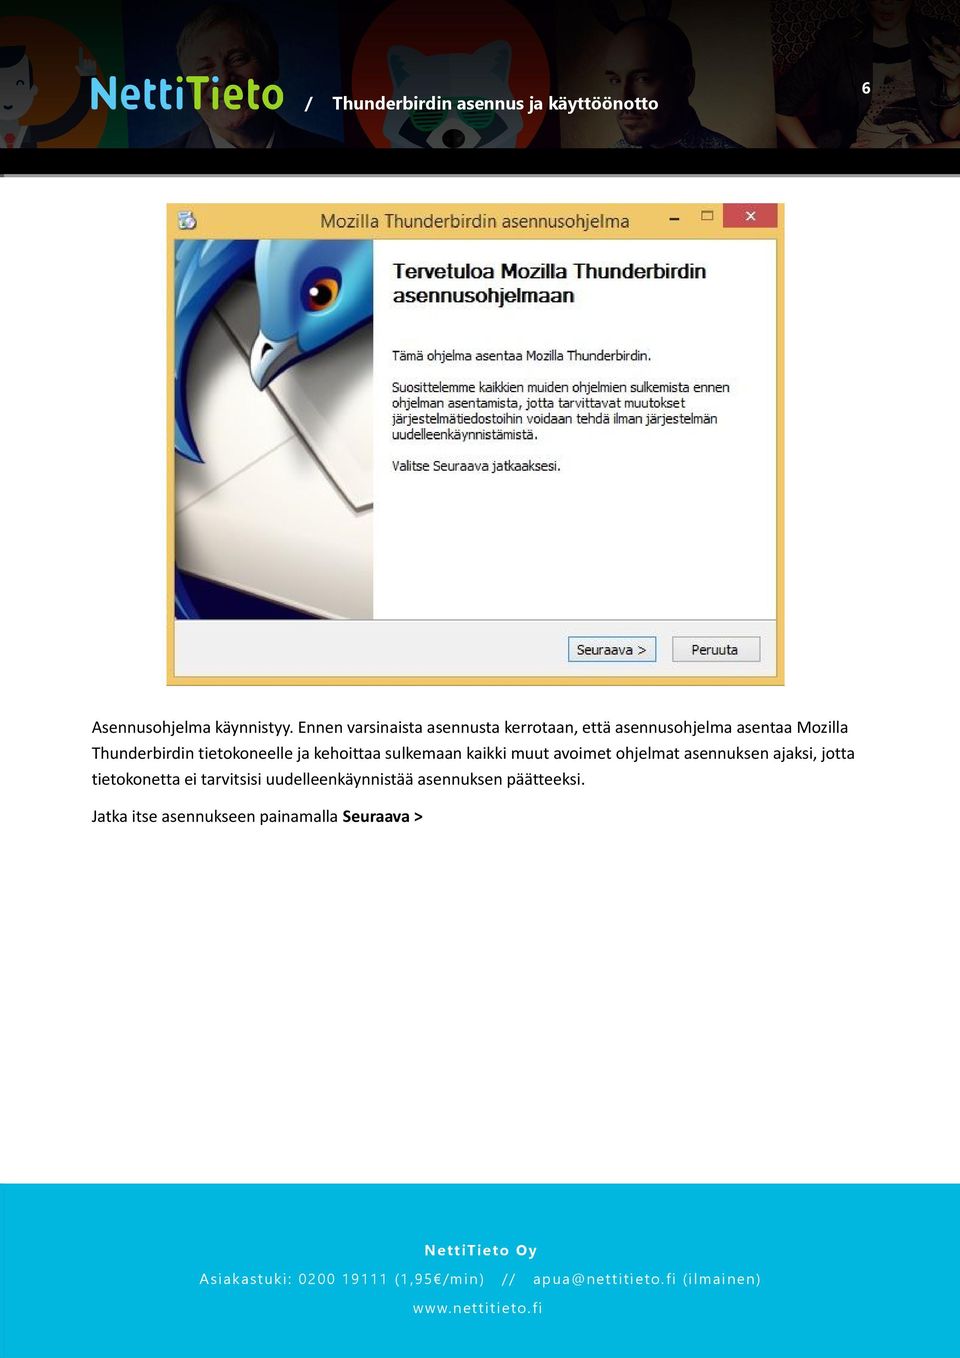 Thunderbirdin tietokoneelle ja kehoittaa sulkemaan kaikki muut avoimet ohjelmat